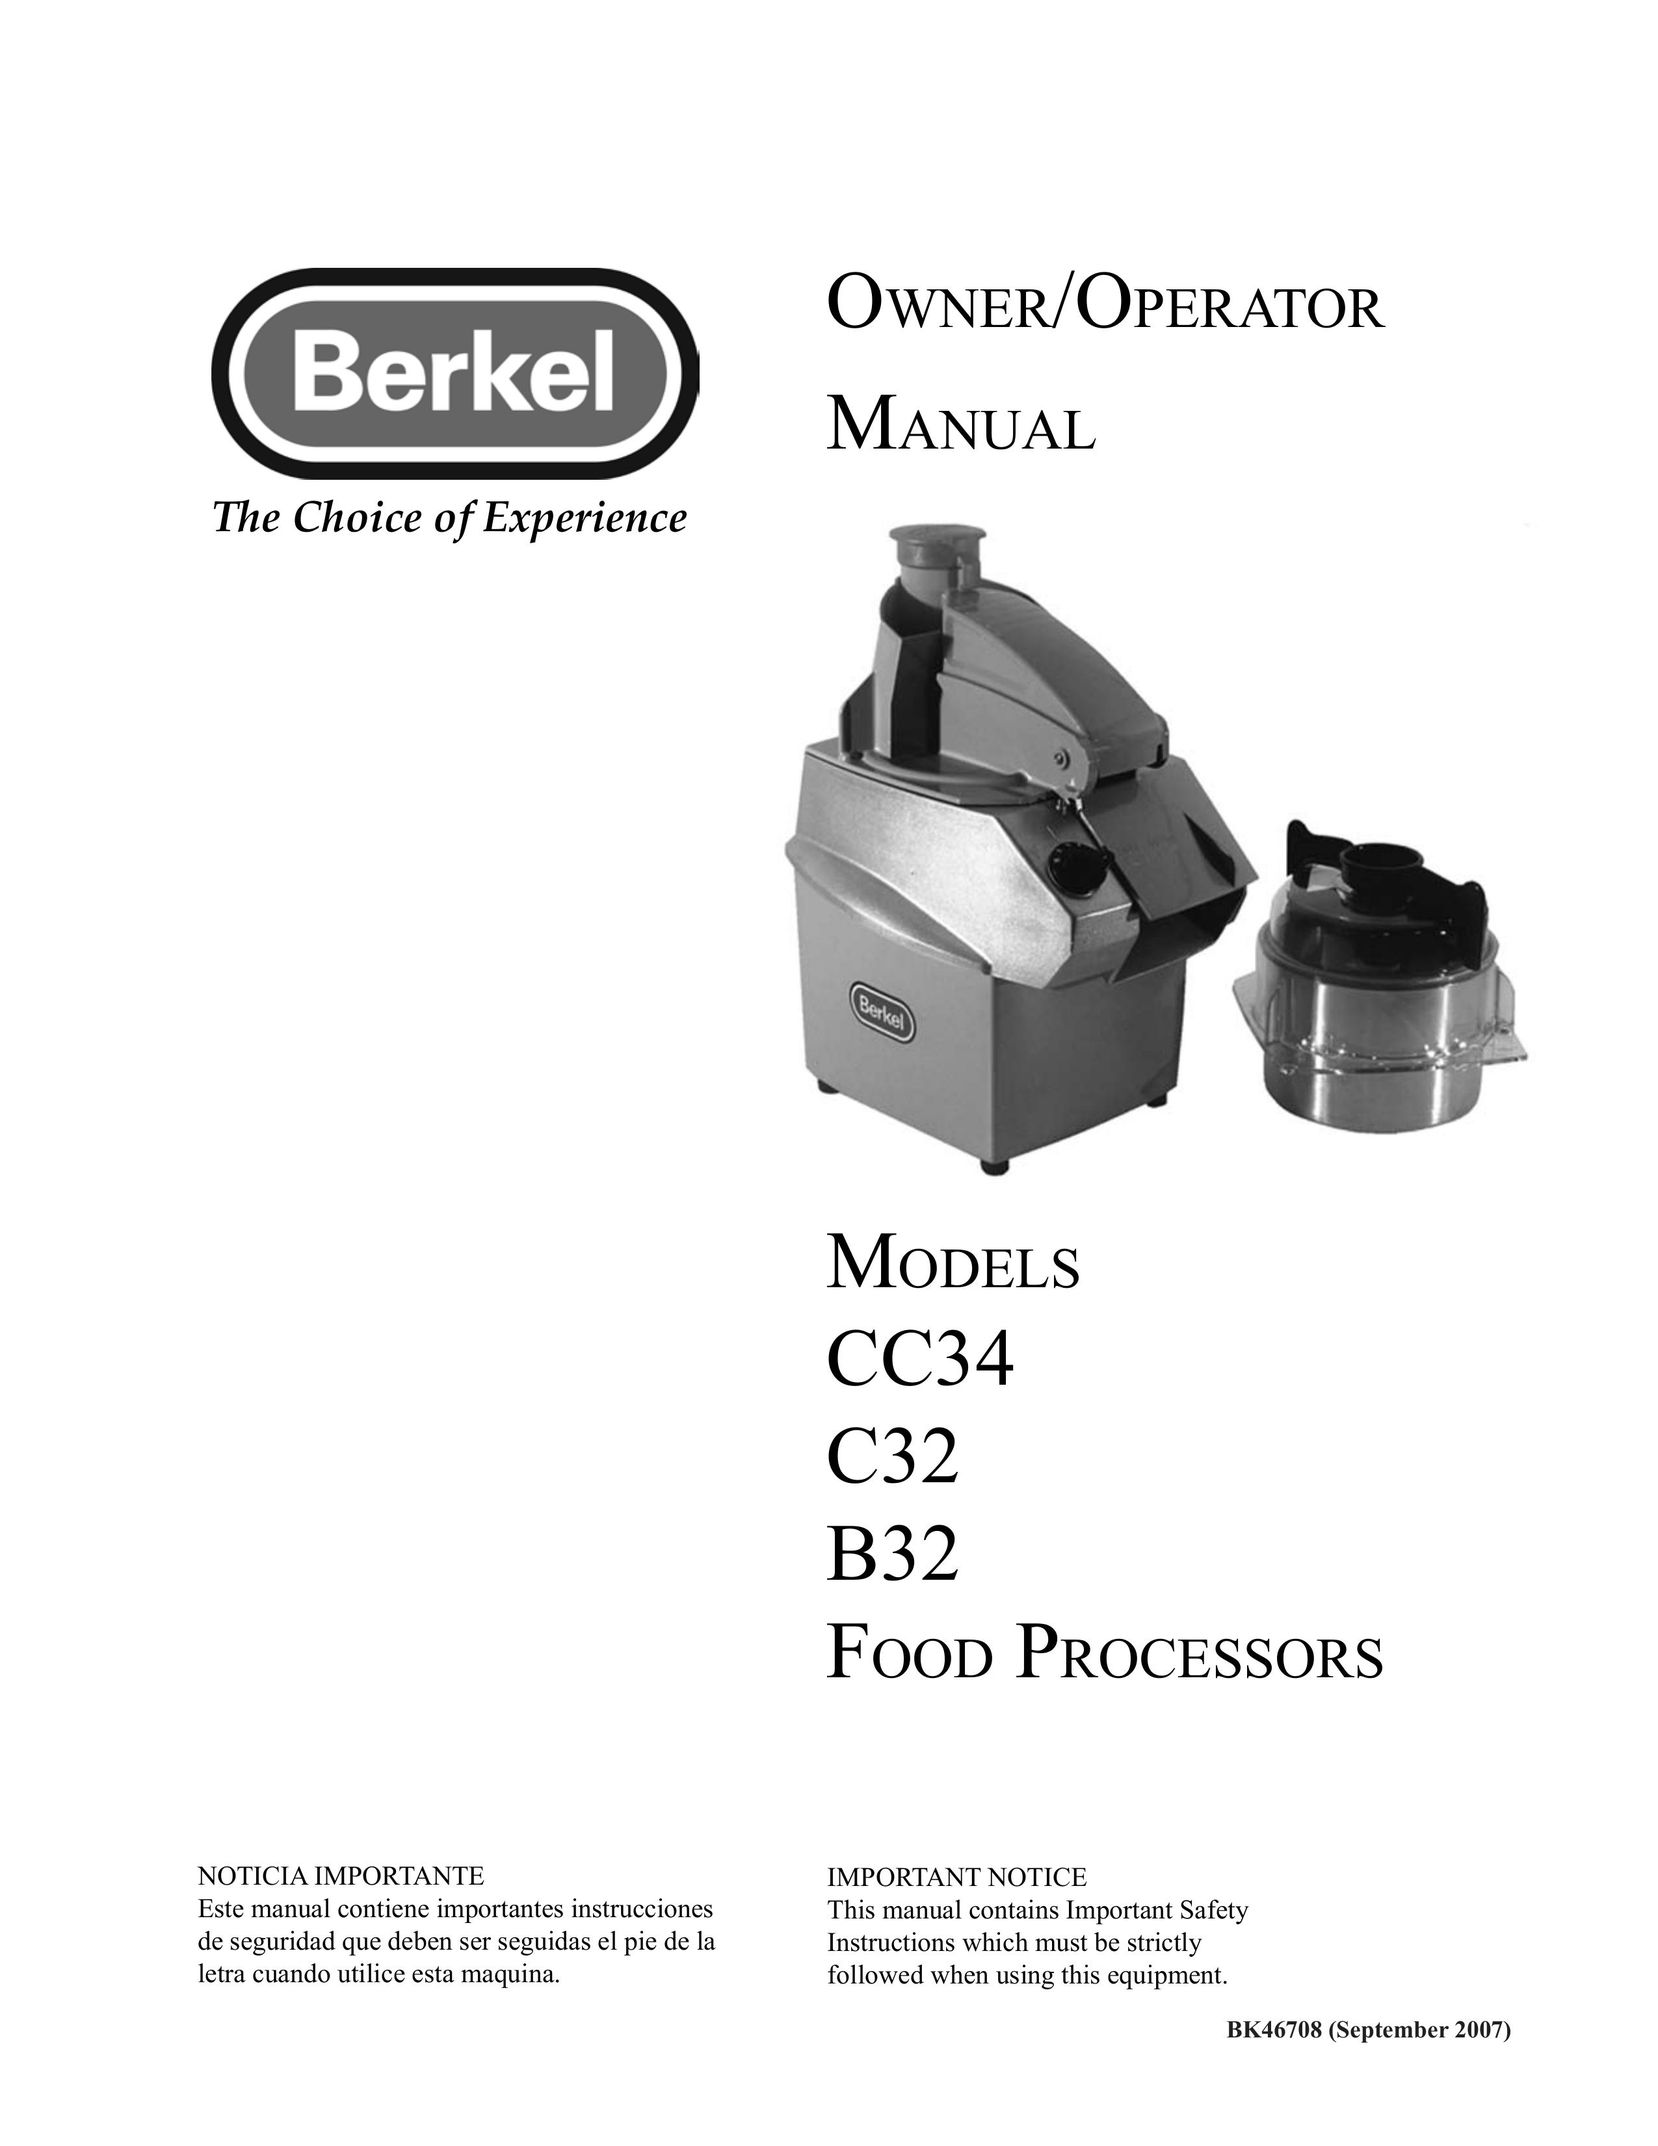 Berkel CC34 Blender User Manual